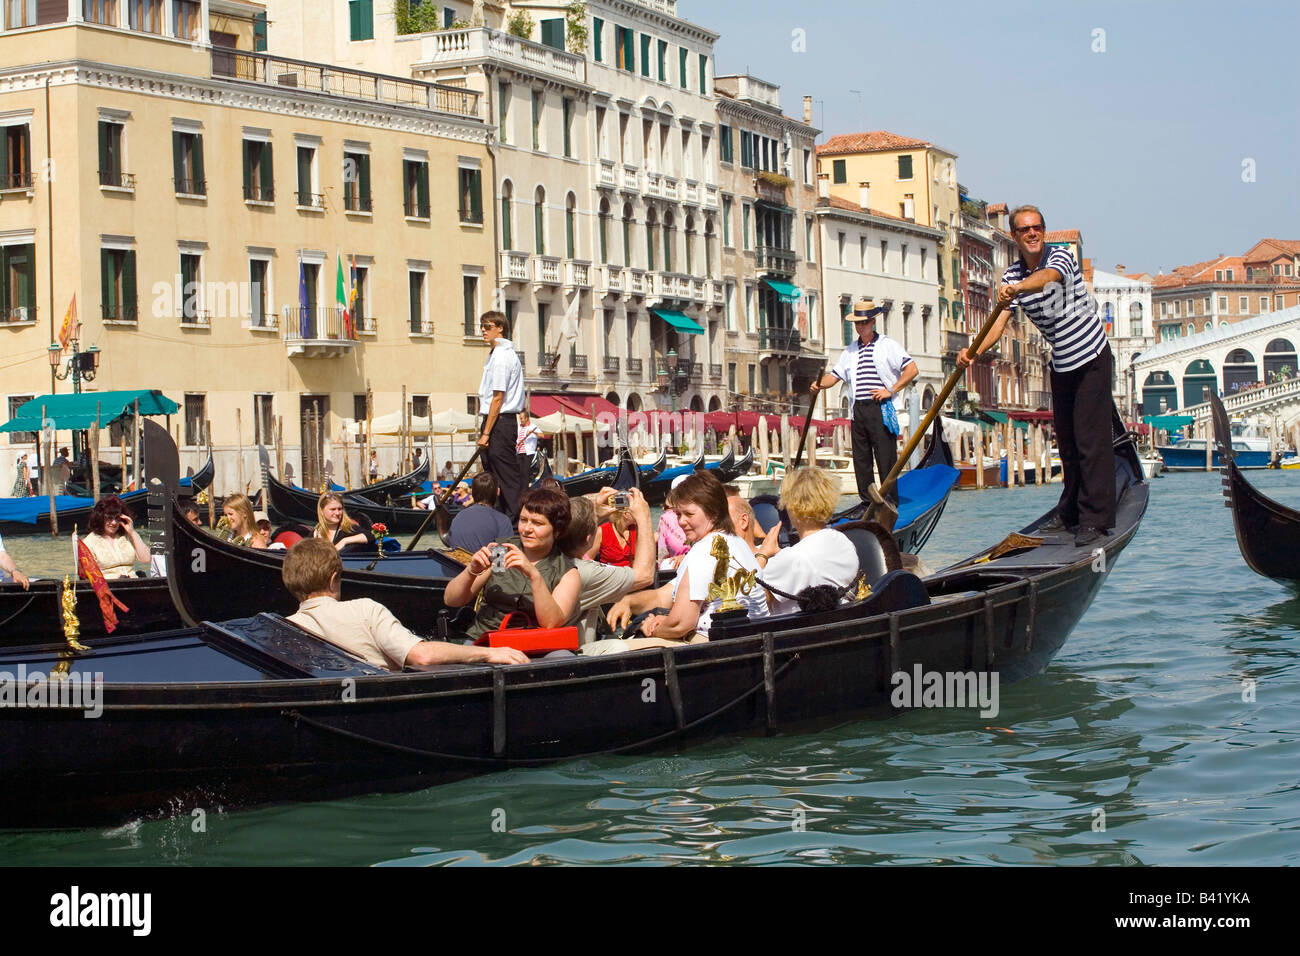 Prendre une gondole près du Pont du Rialto à Venise Italie Banque D'Images